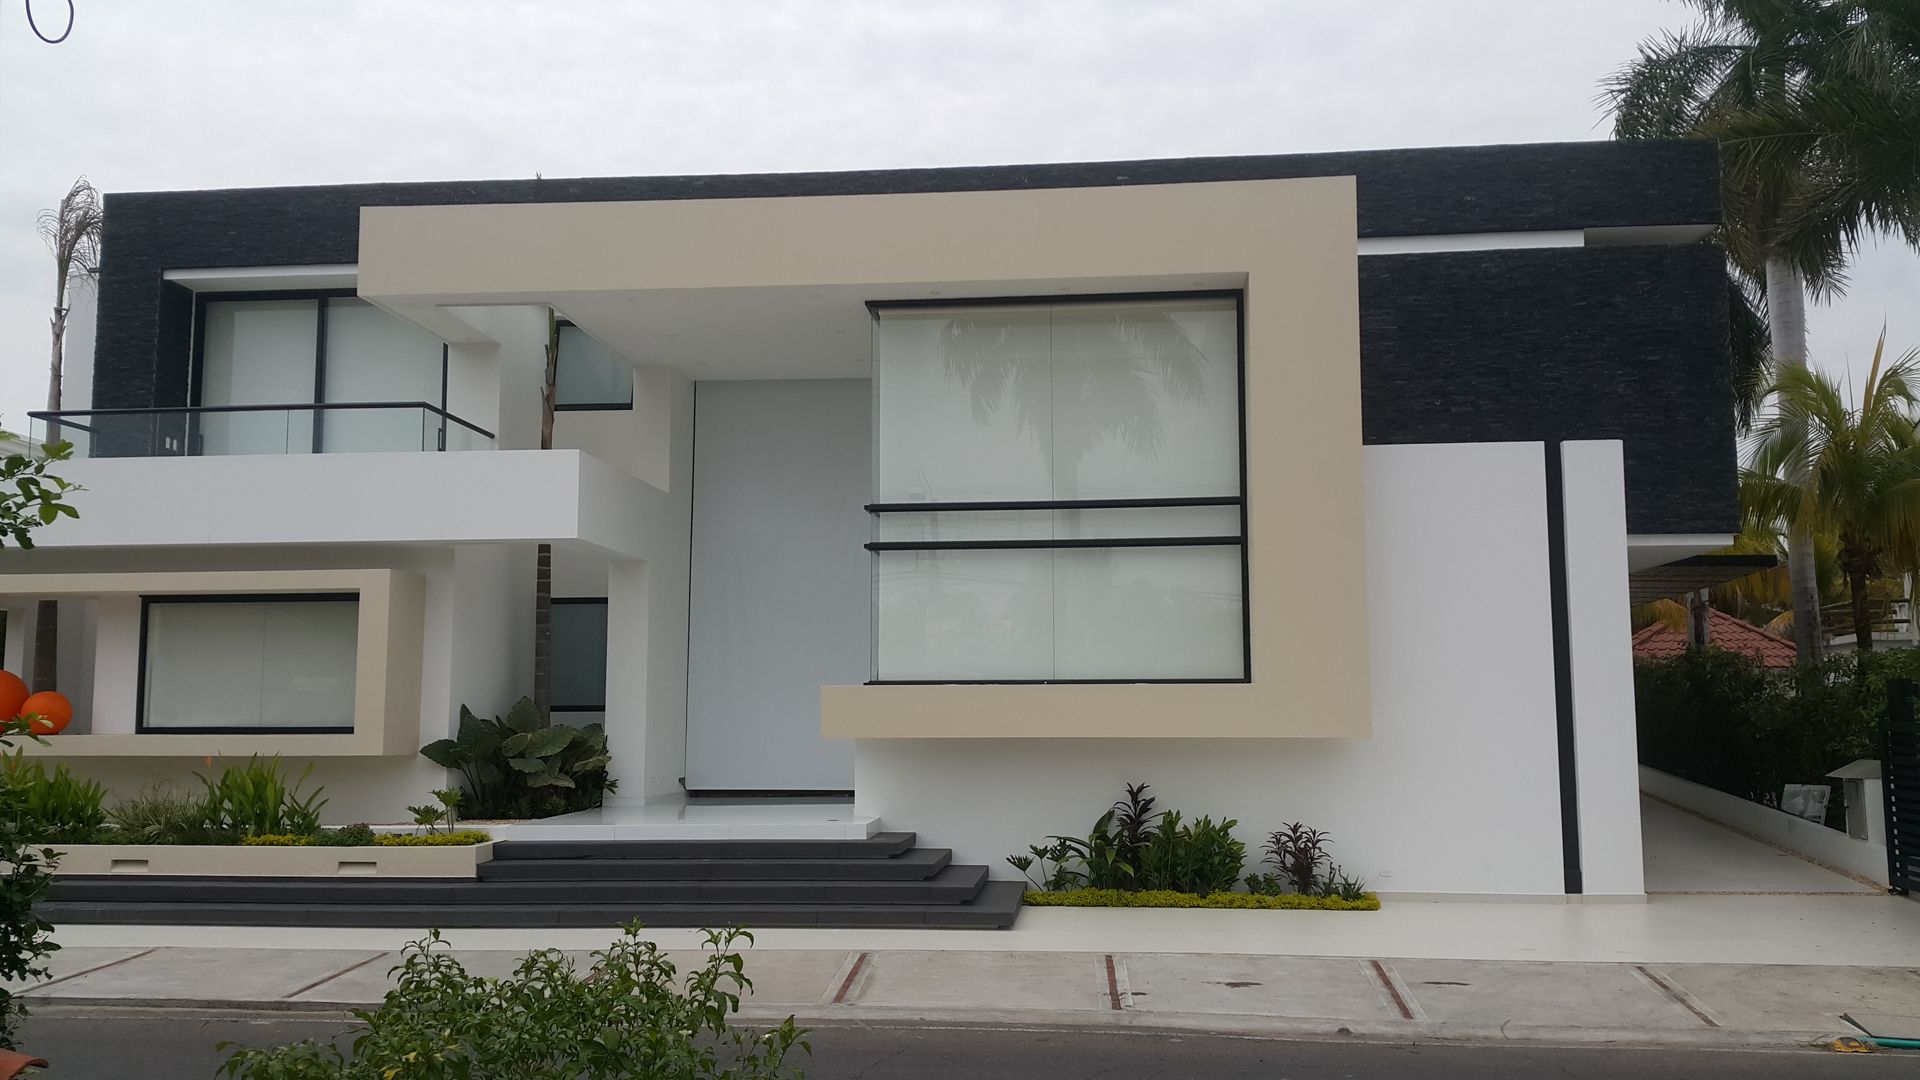 Fachada Principal. homify Casas estilo moderno: ideas, arquitectura e imágenes Concreto